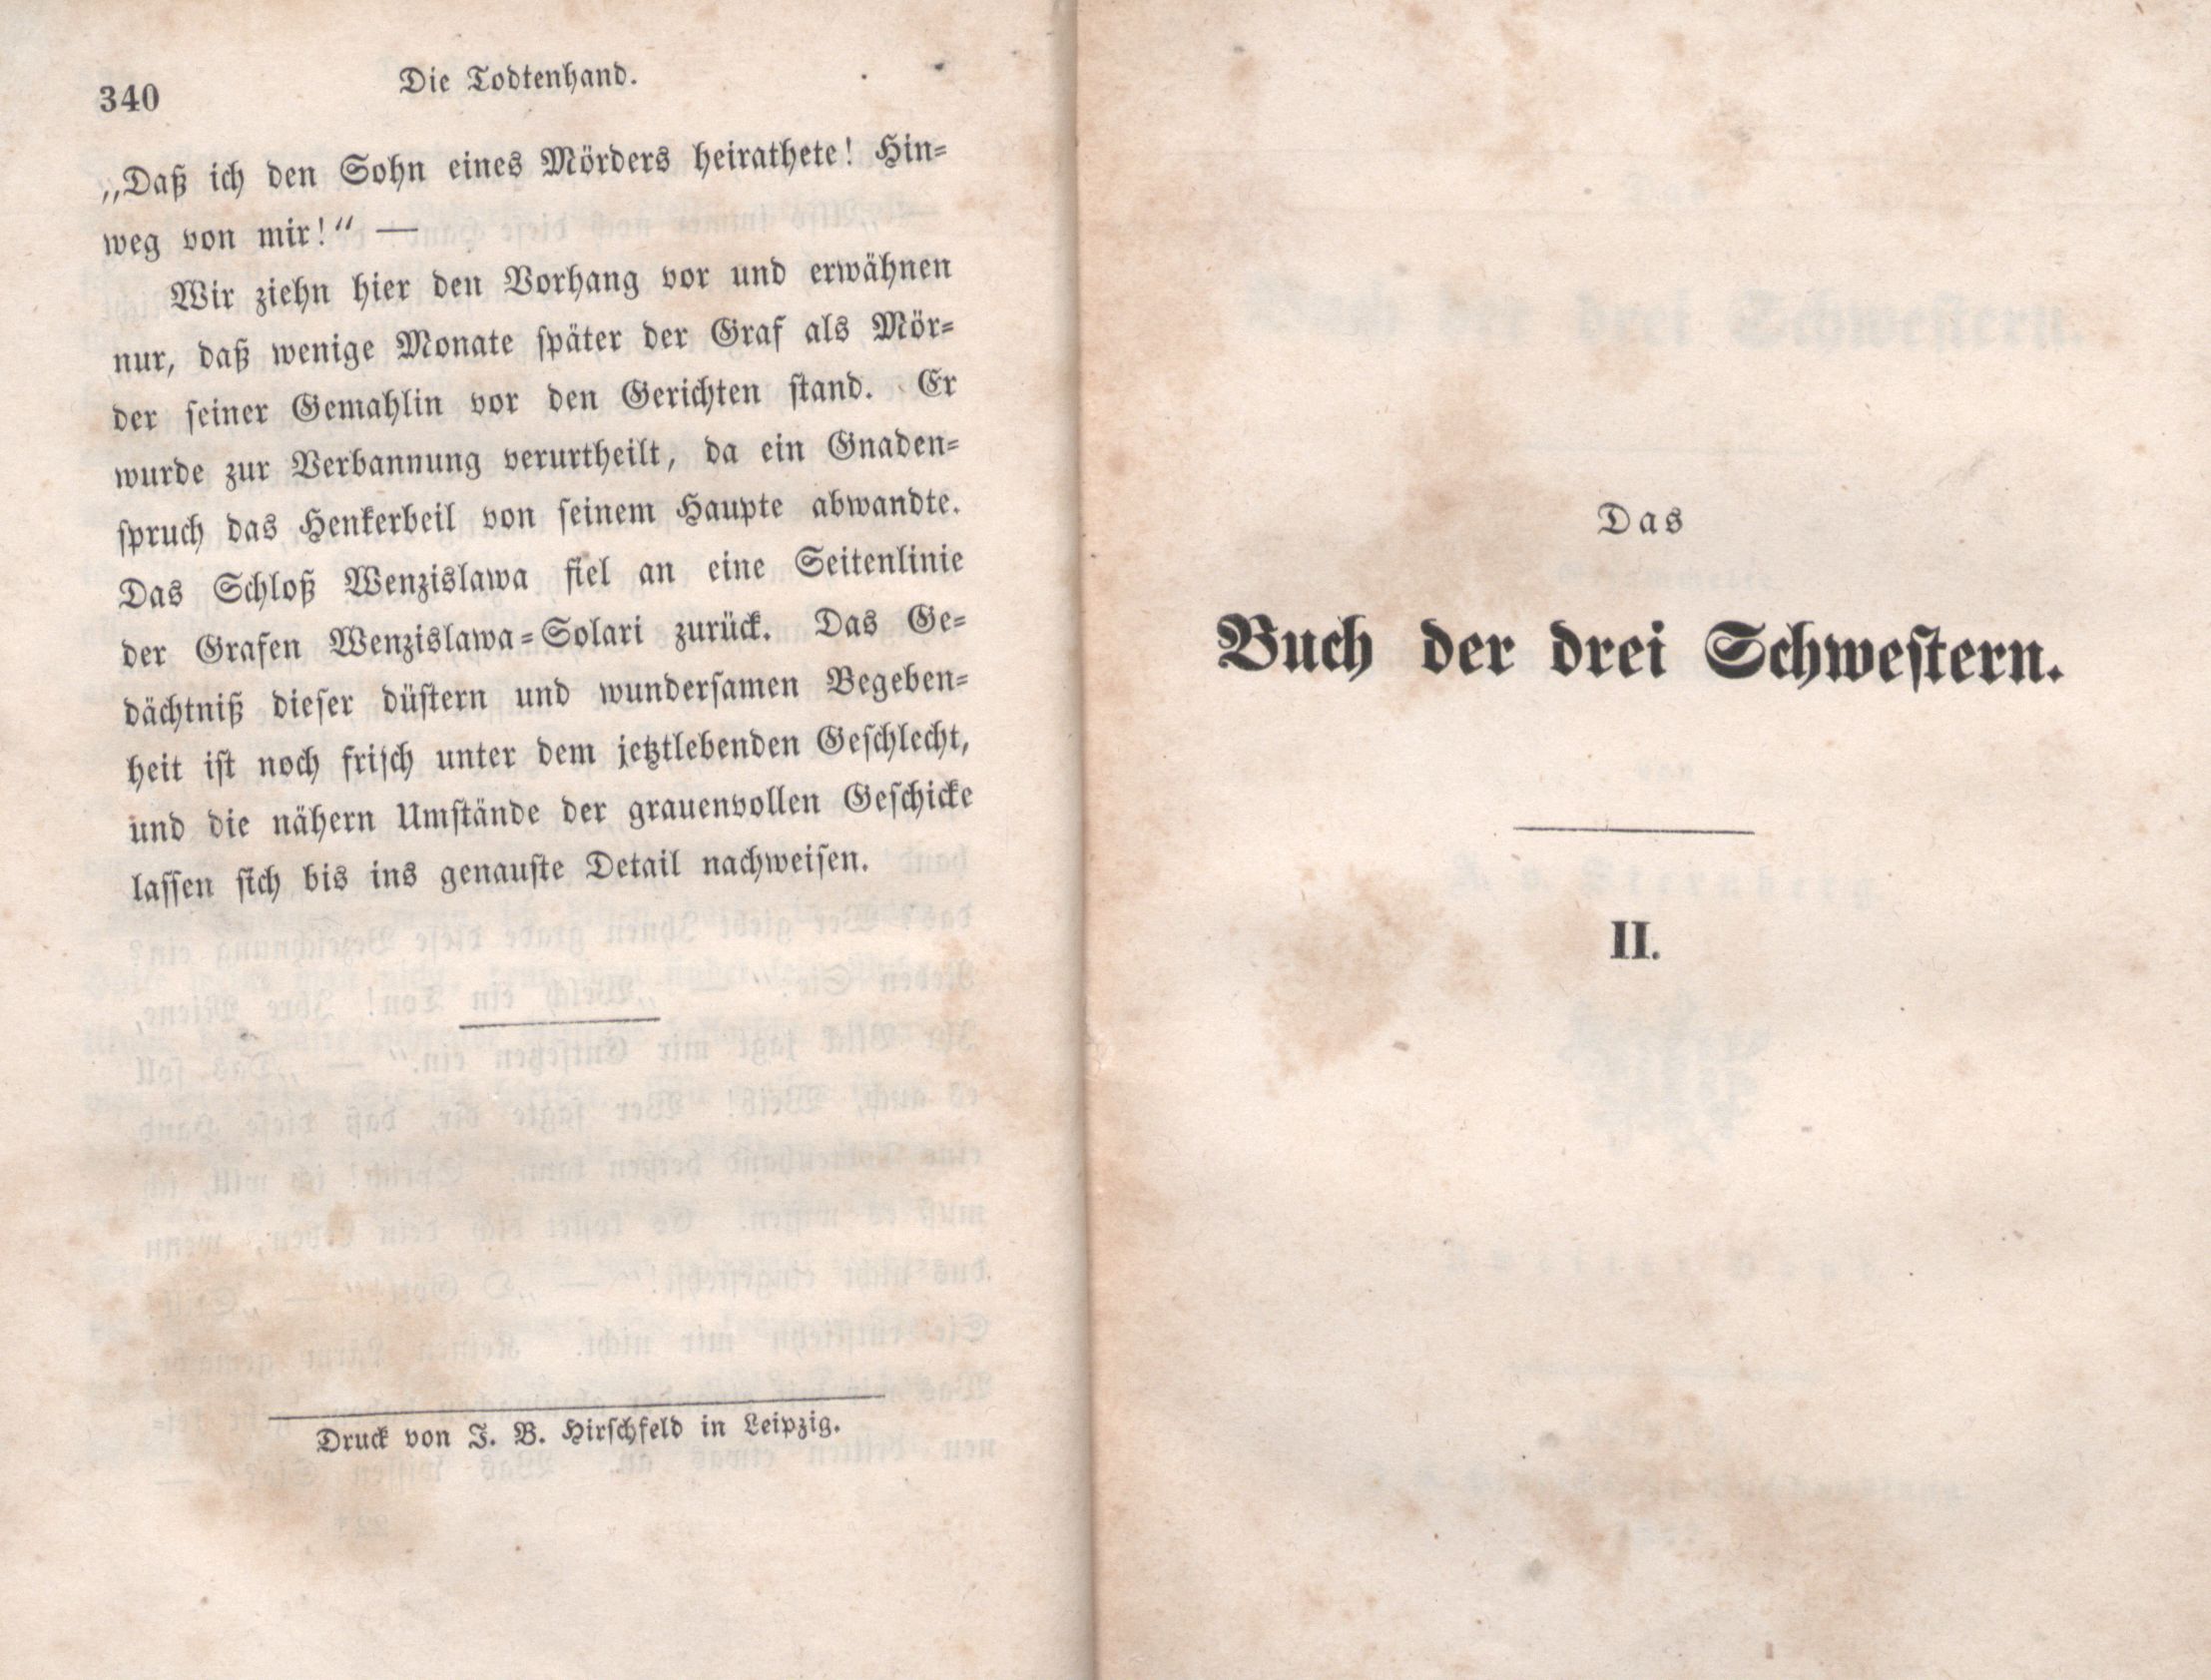 Die Todtenhand (1847) | 24. (340) Haupttext